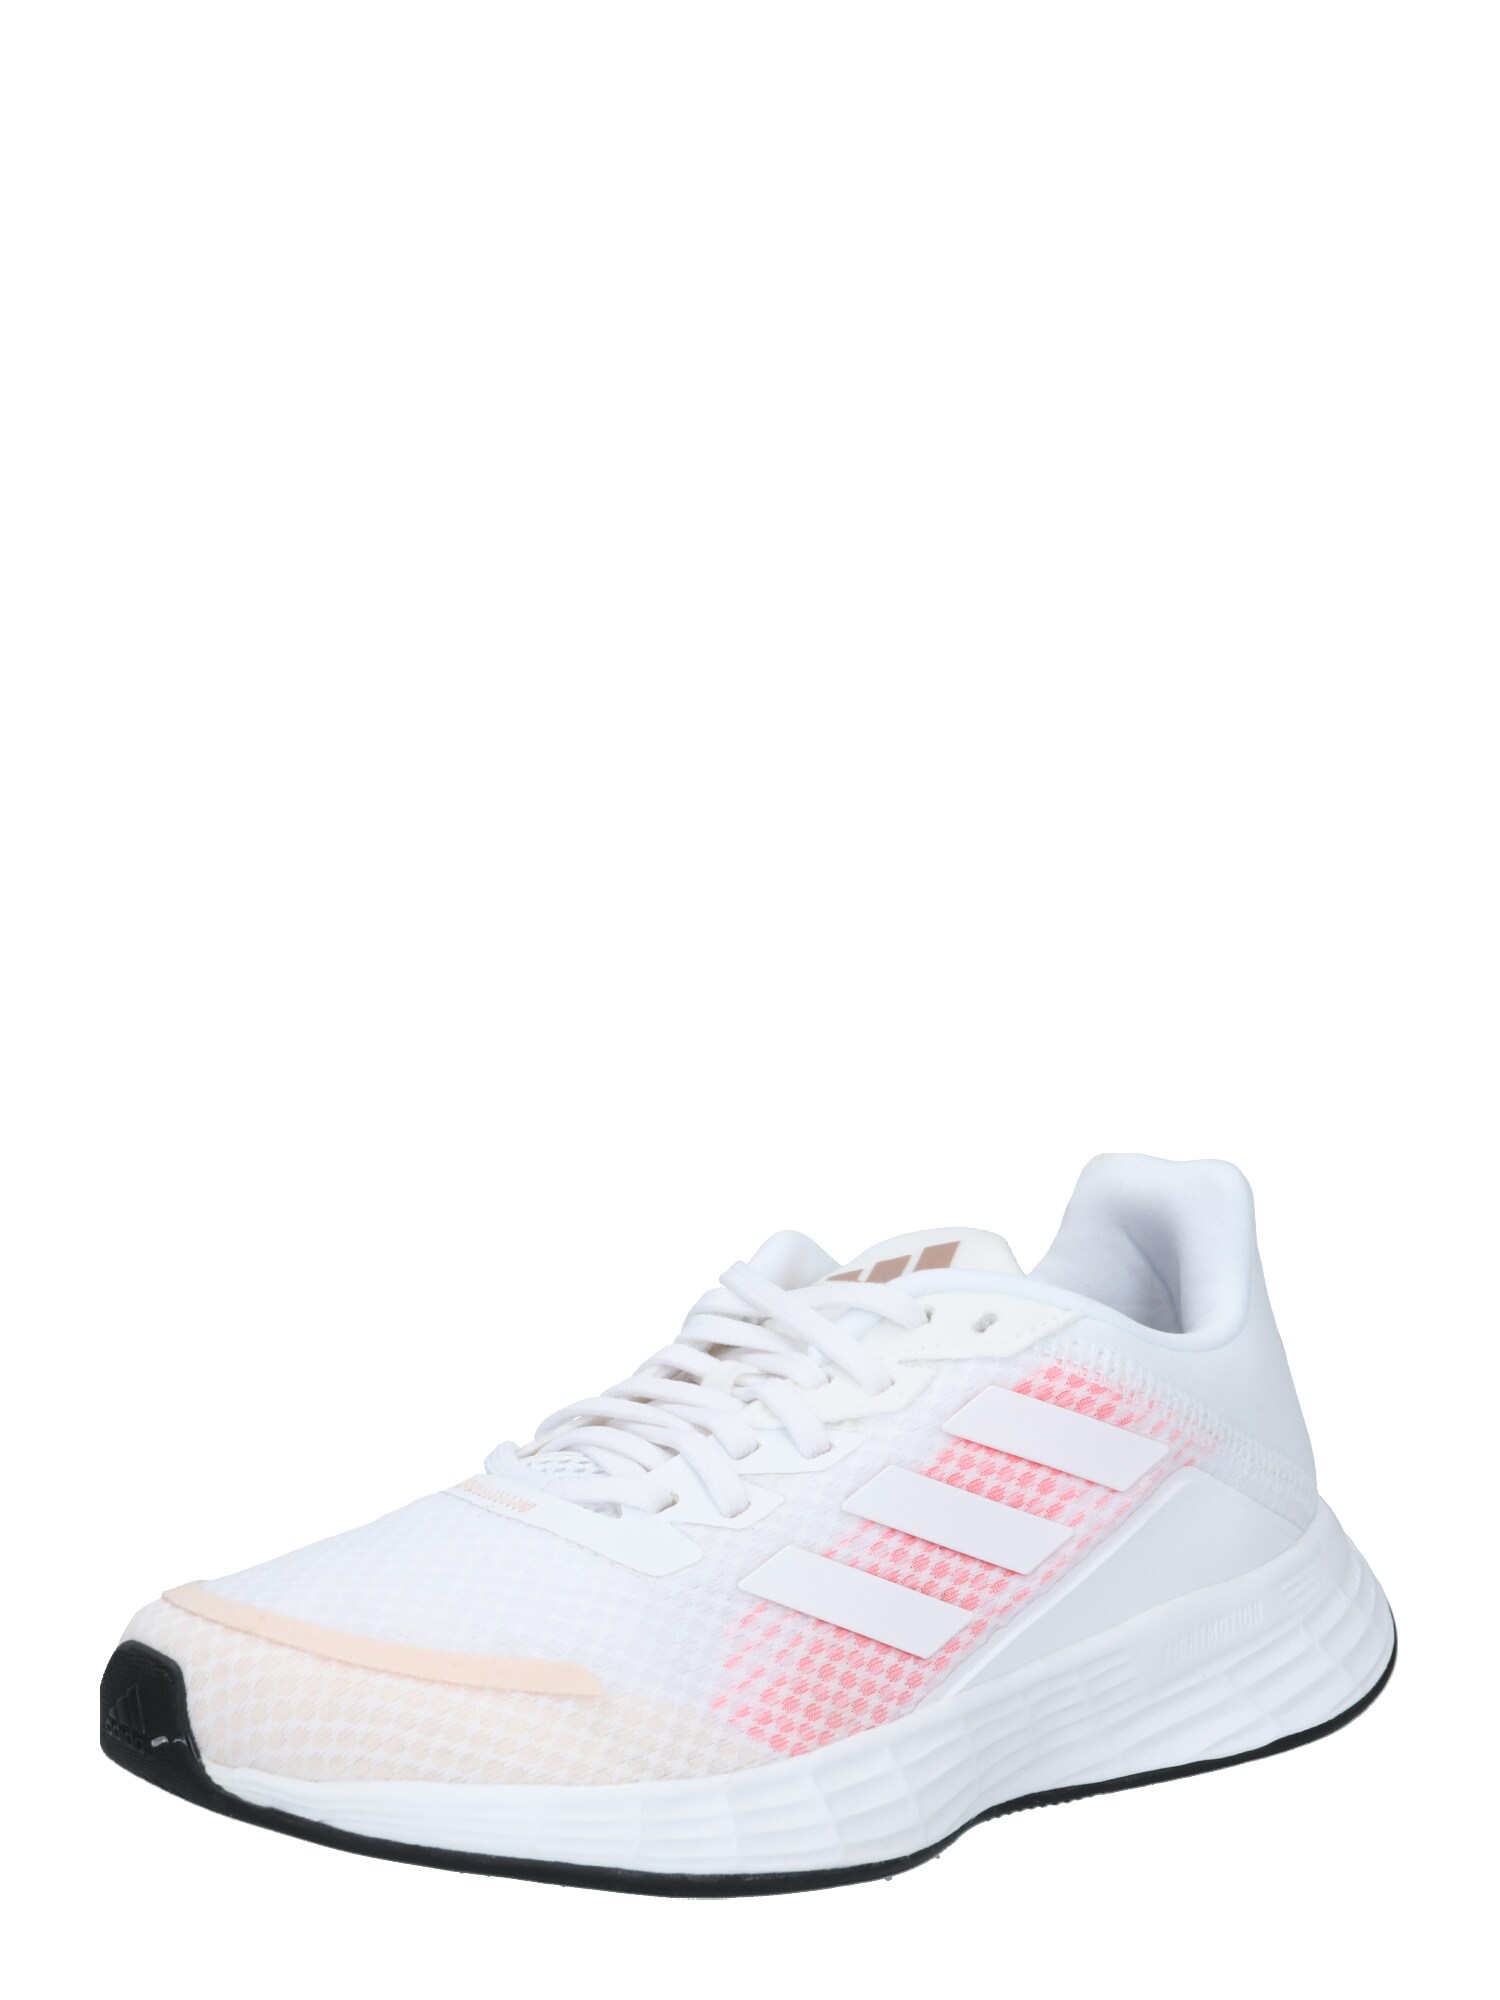 ADIDAS PERFORMANCE Bėgimo batai 'Duramo'  neoninė rožinė / pastelinė oranžinė / balta